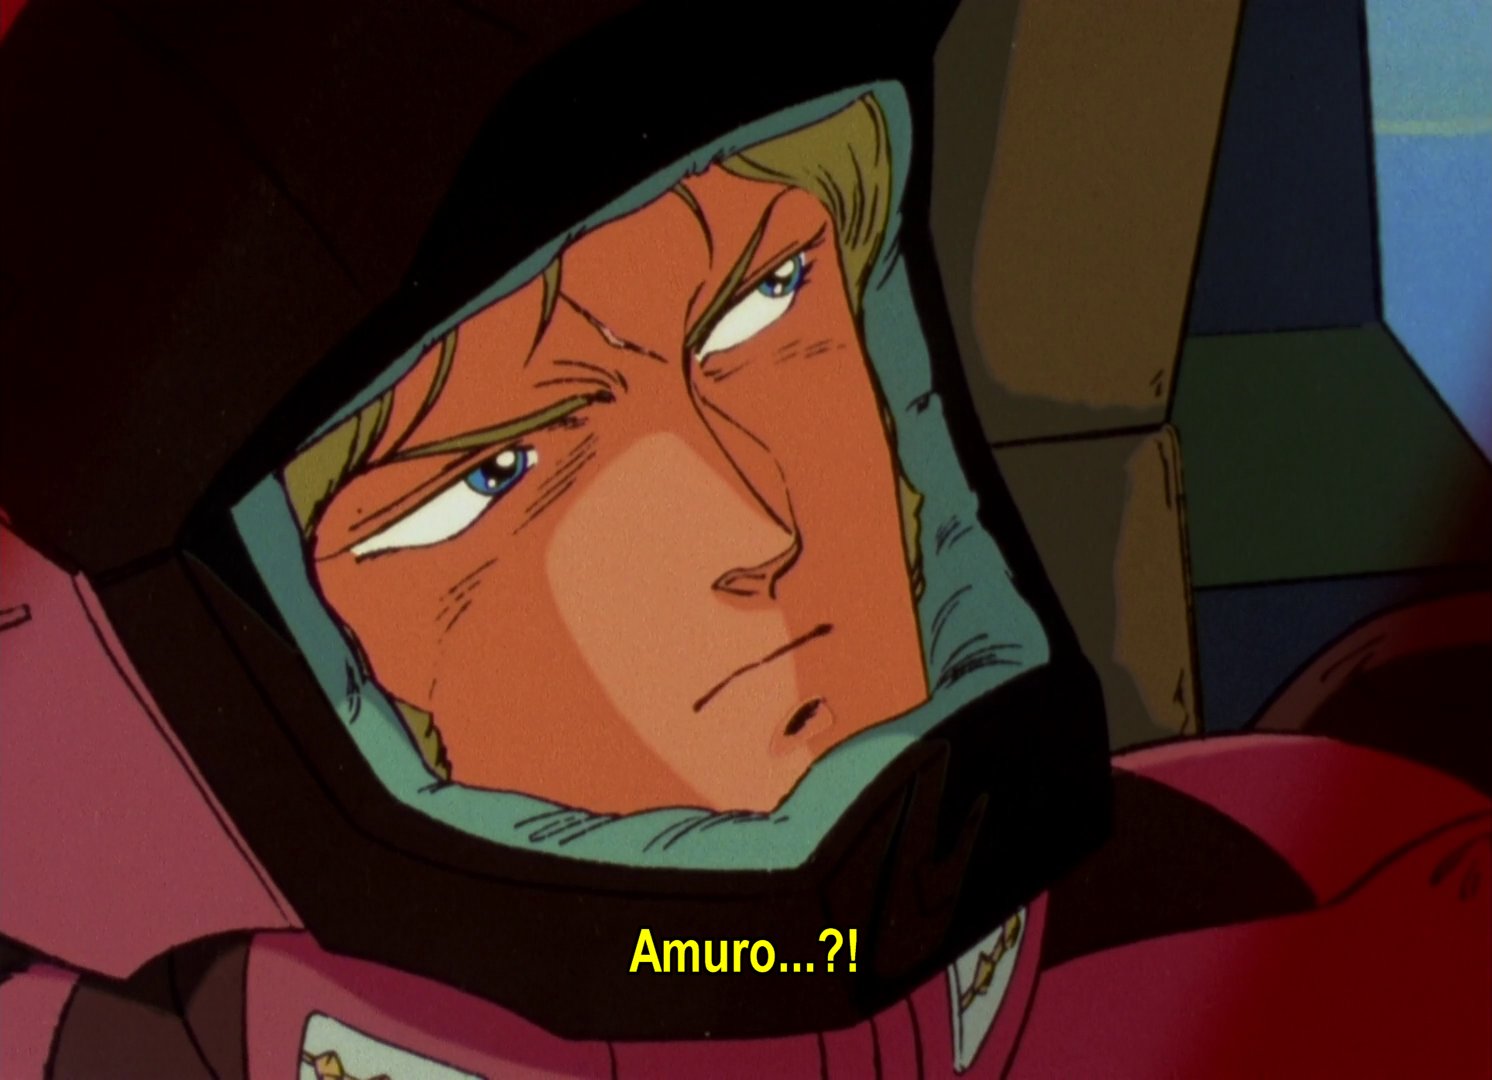 Lt Quattro, pausing: Amuro?!